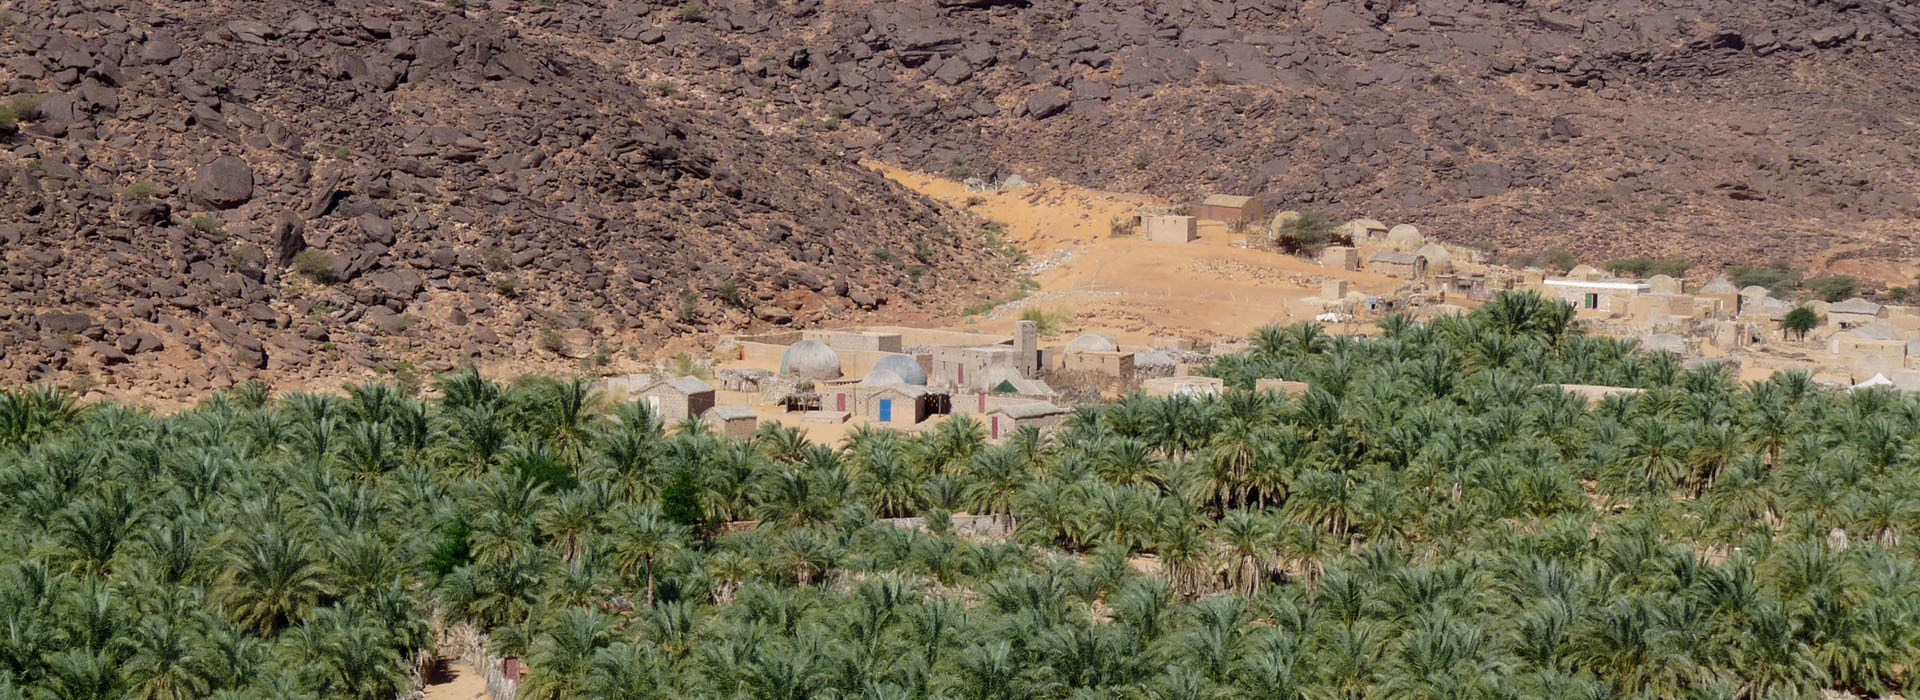 Visiter L'Oasis Mhaireth - Mauritanie